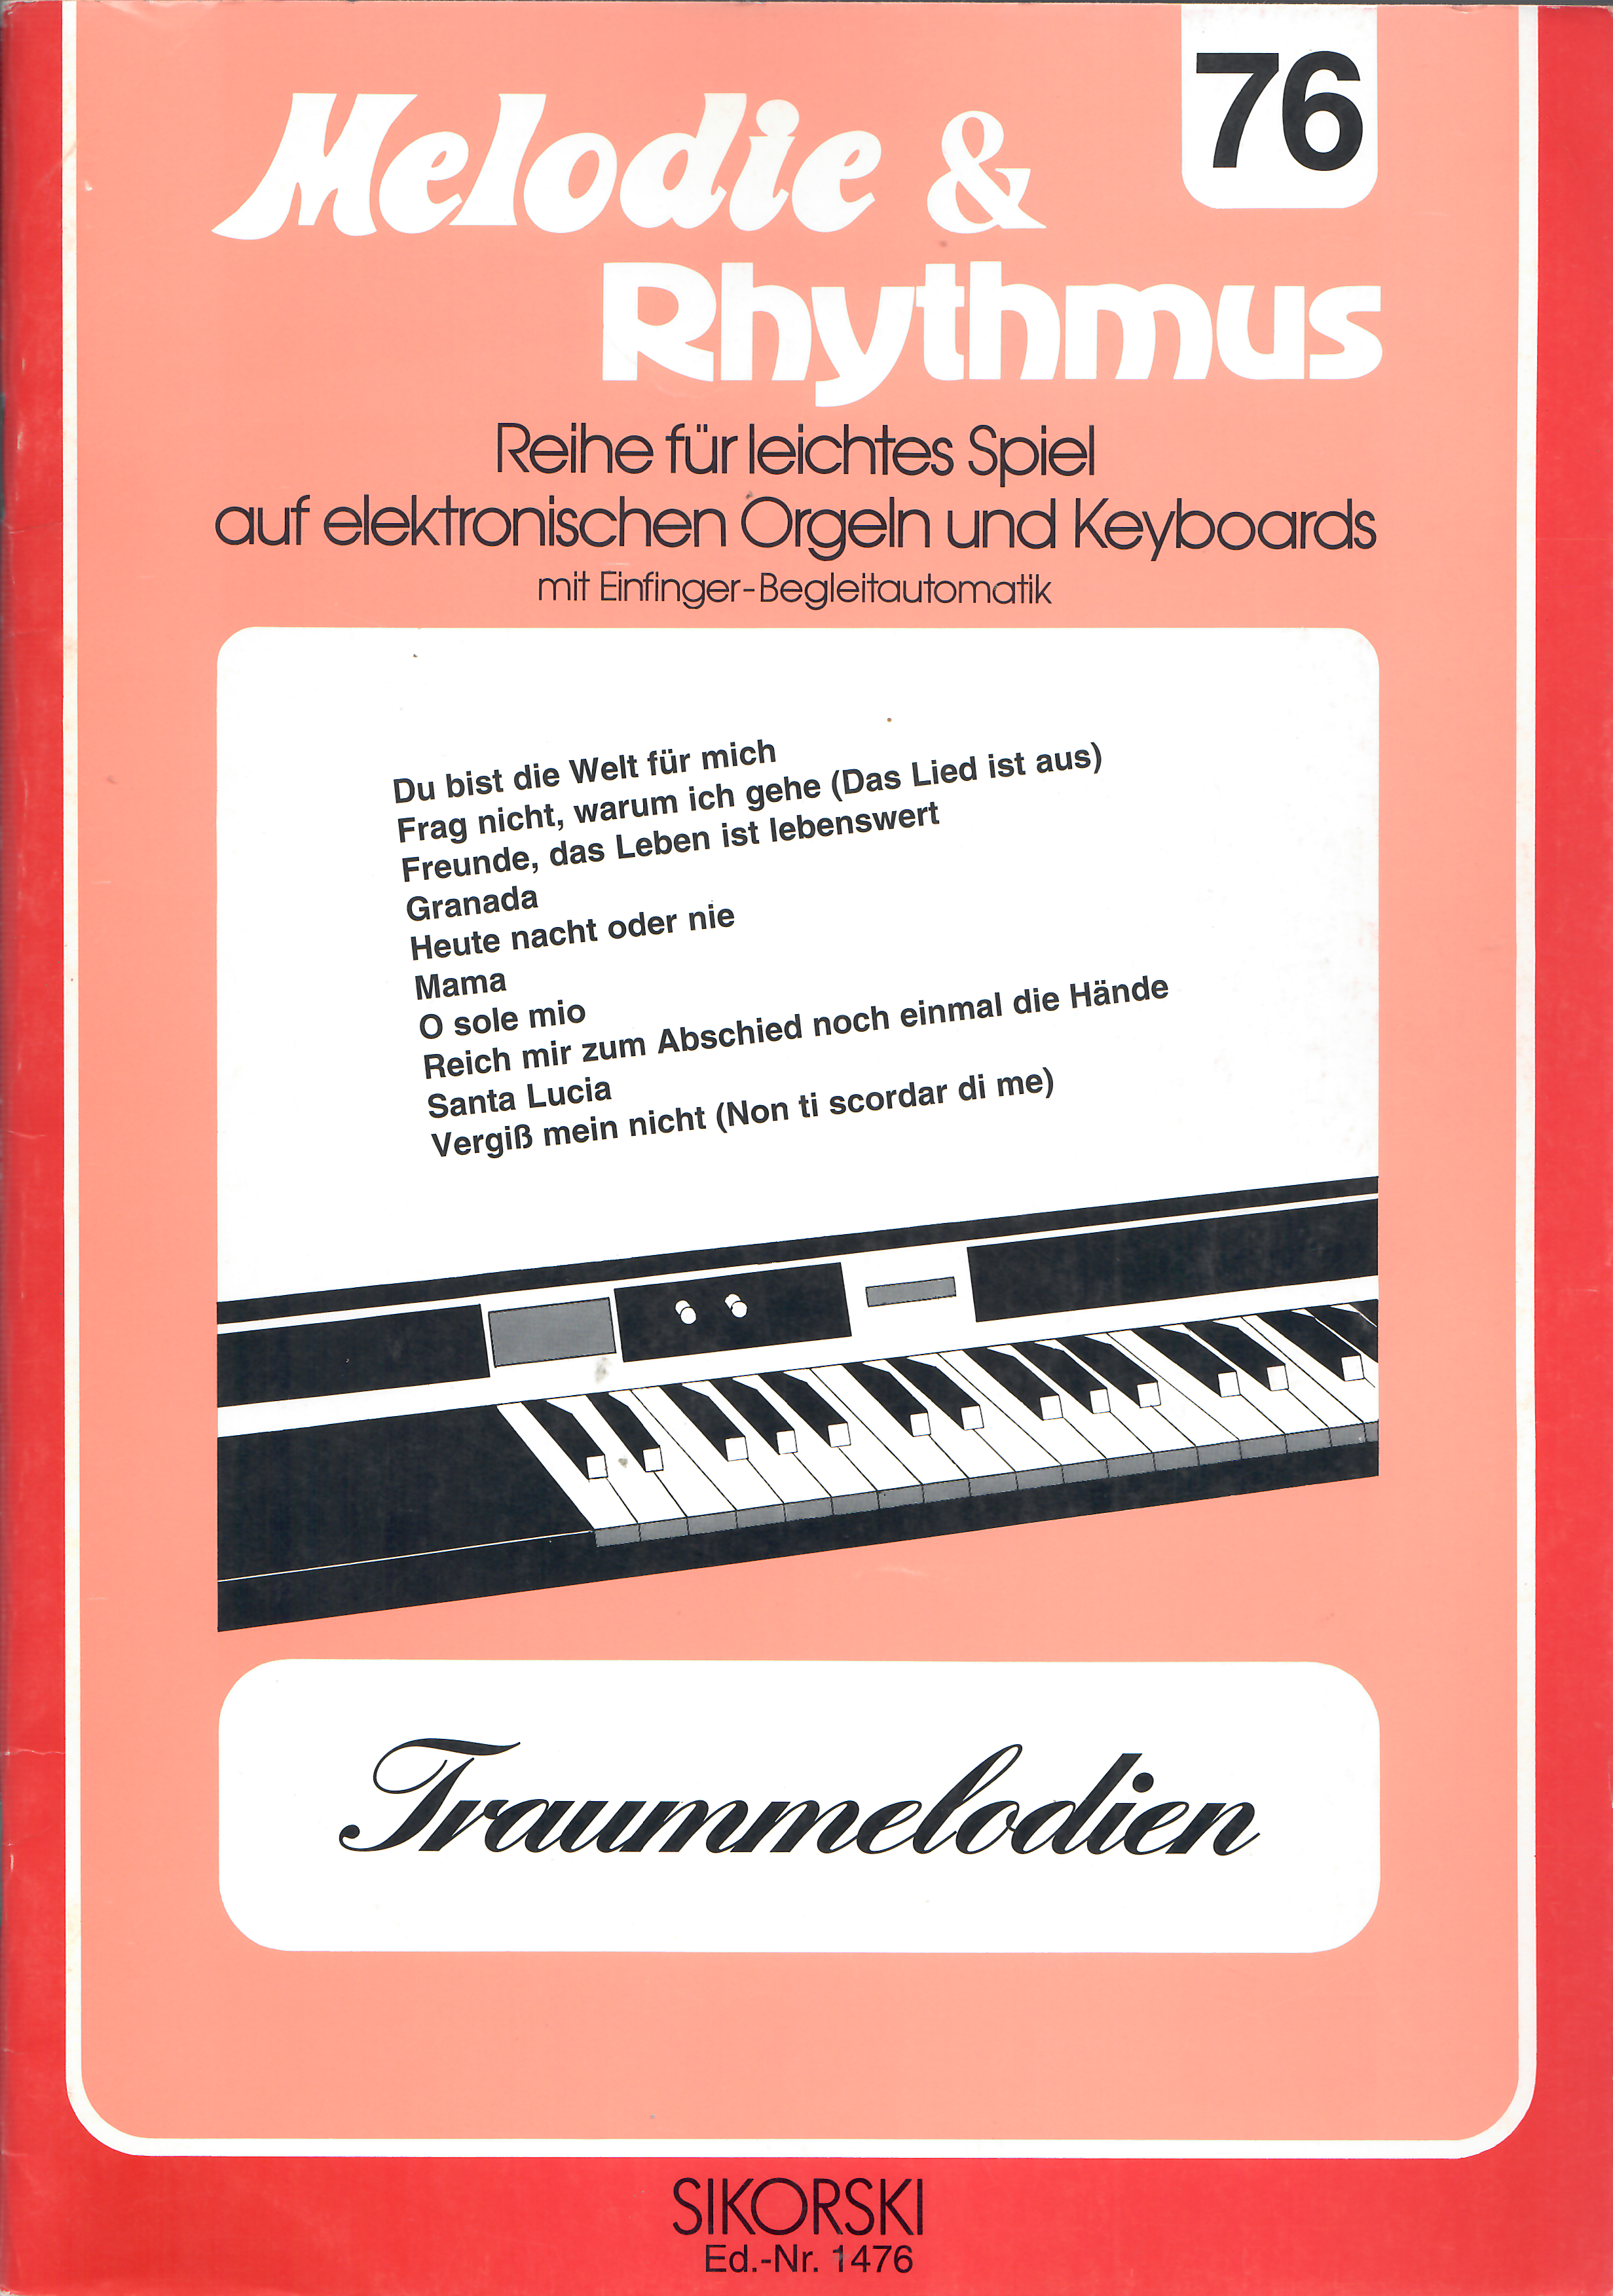 Melodie & Rhythmus bd. 76 - Traummelodien